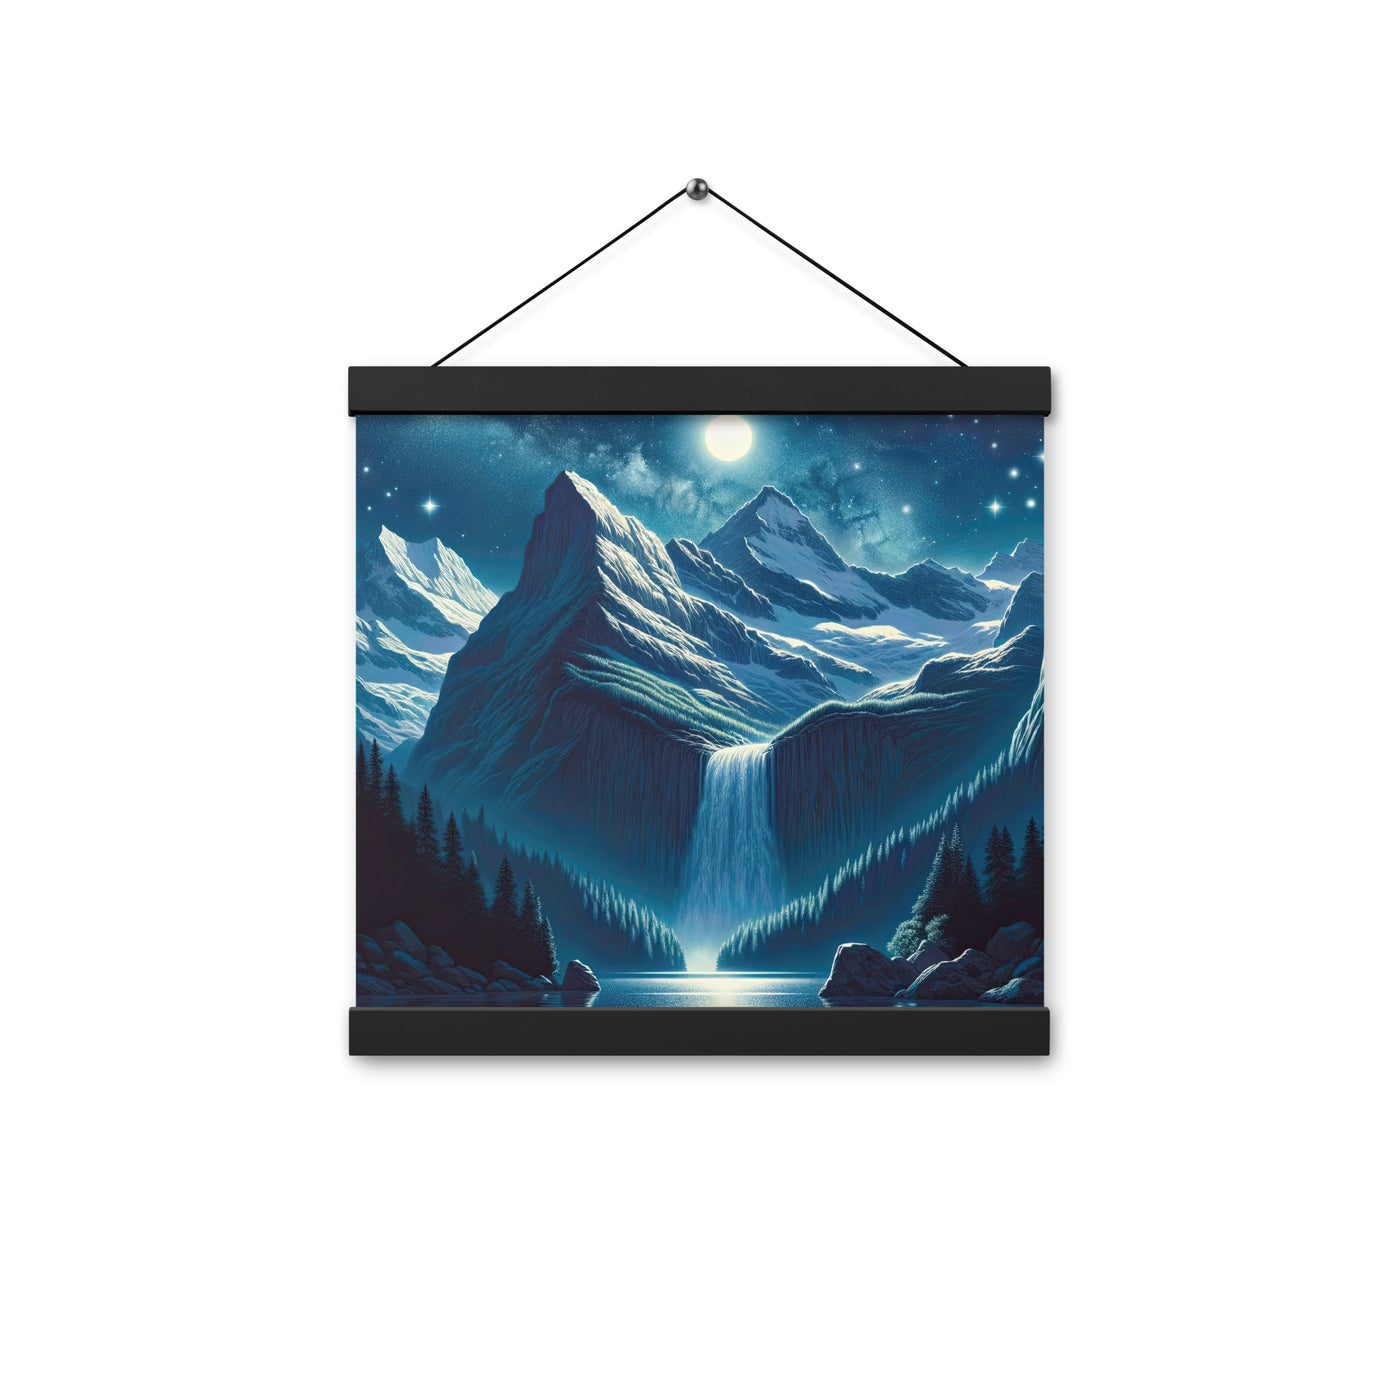 Legendäre Alpennacht, Mondlicht-Berge unter Sternenhimmel - Premium Poster mit Aufhängung berge xxx yyy zzz 30.5 x 30.5 cm